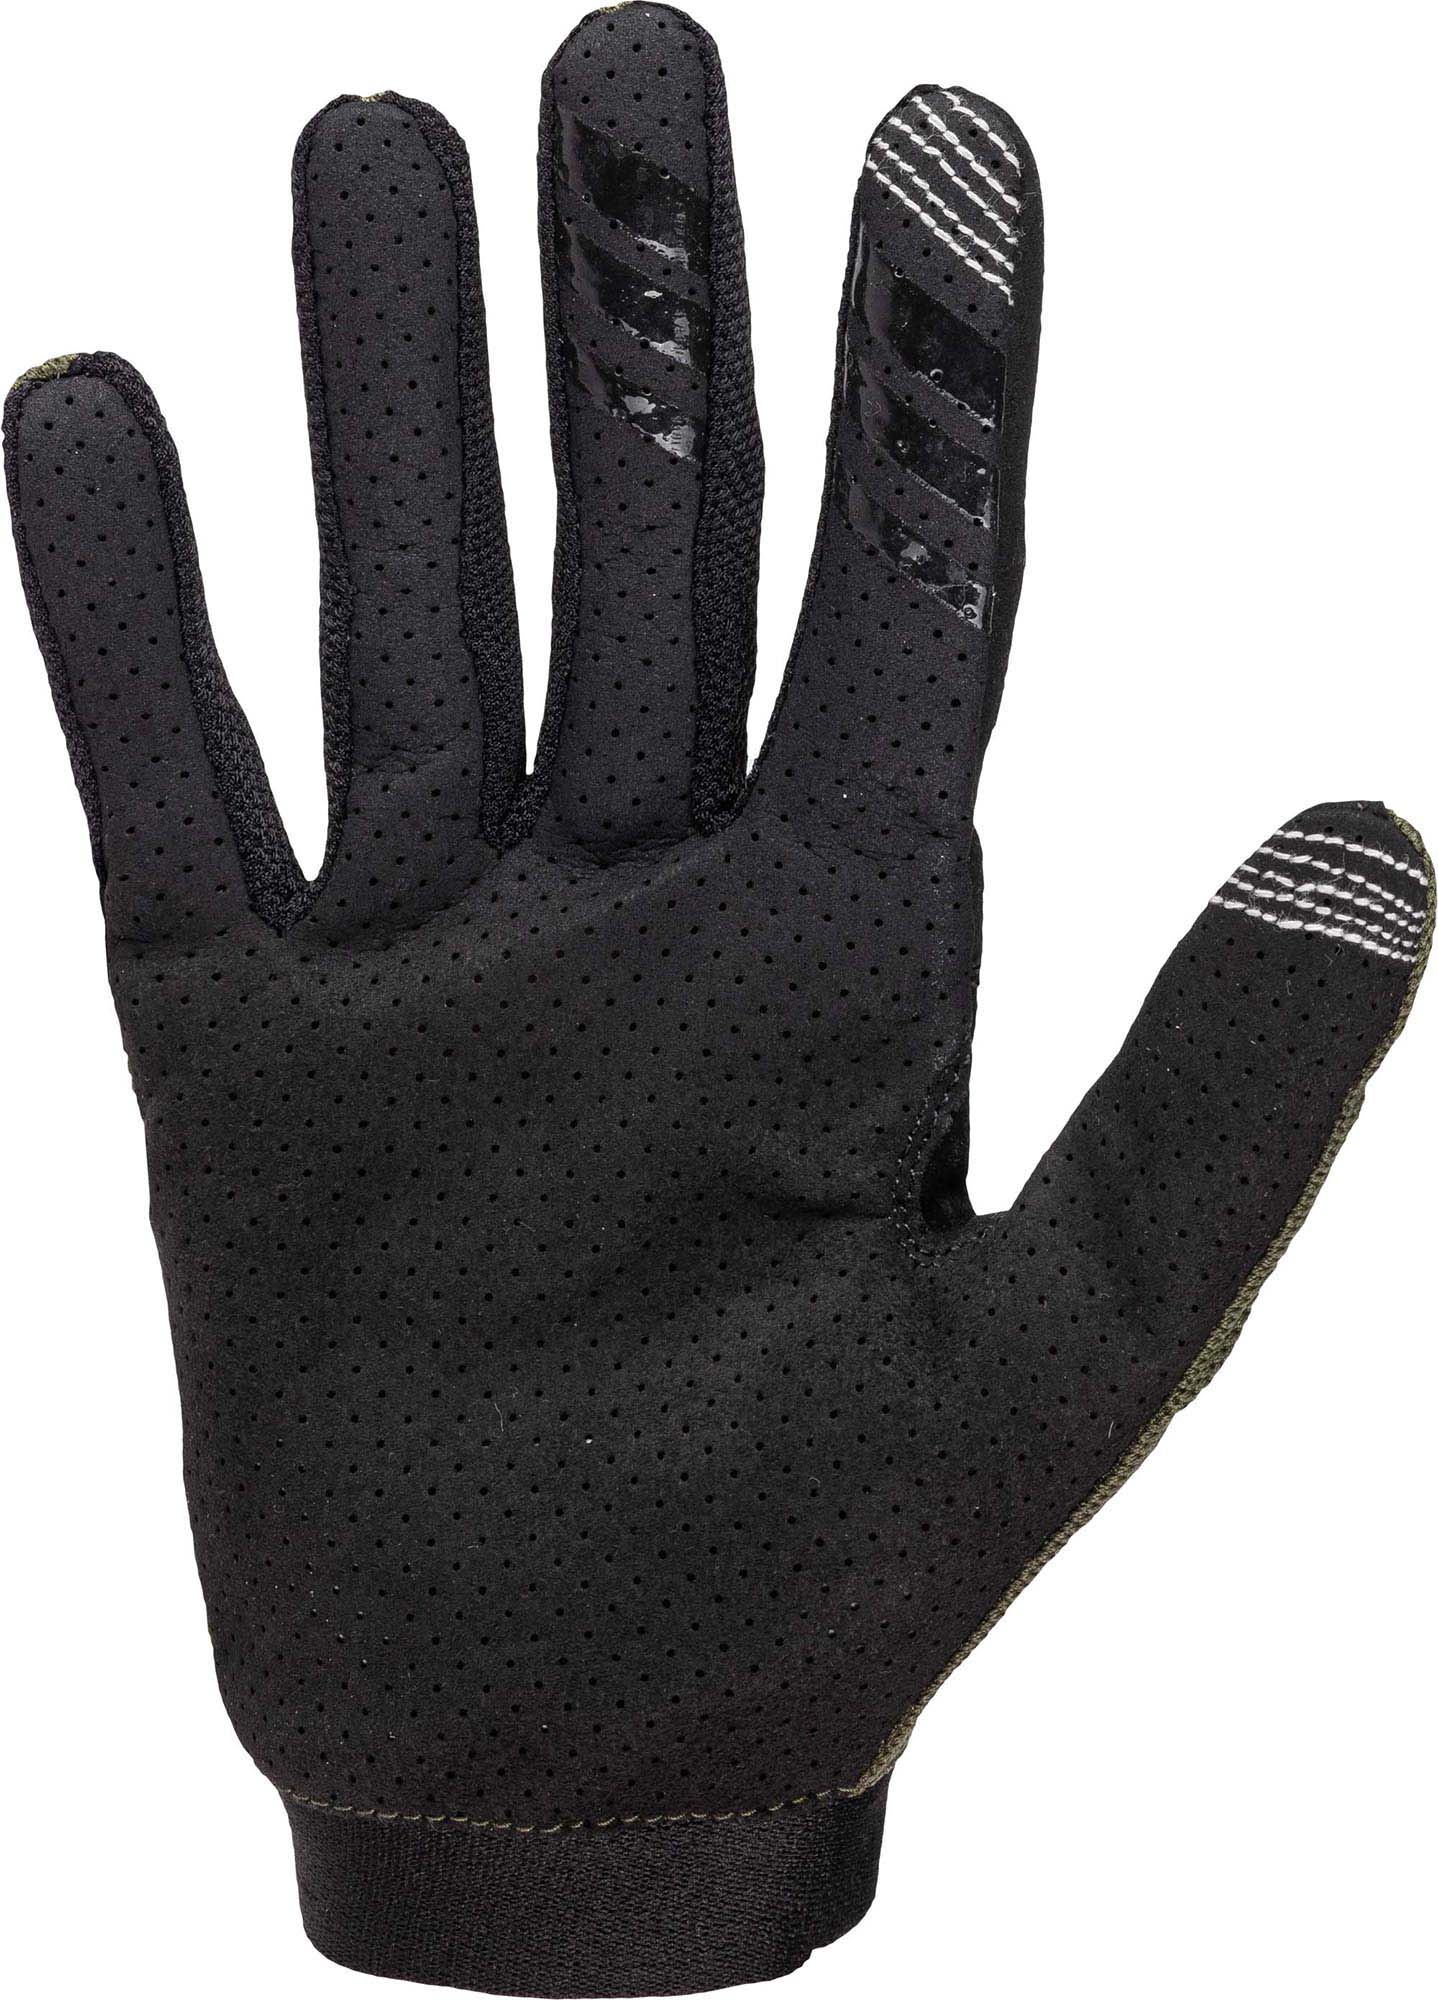 Men's full finger cycling gloves